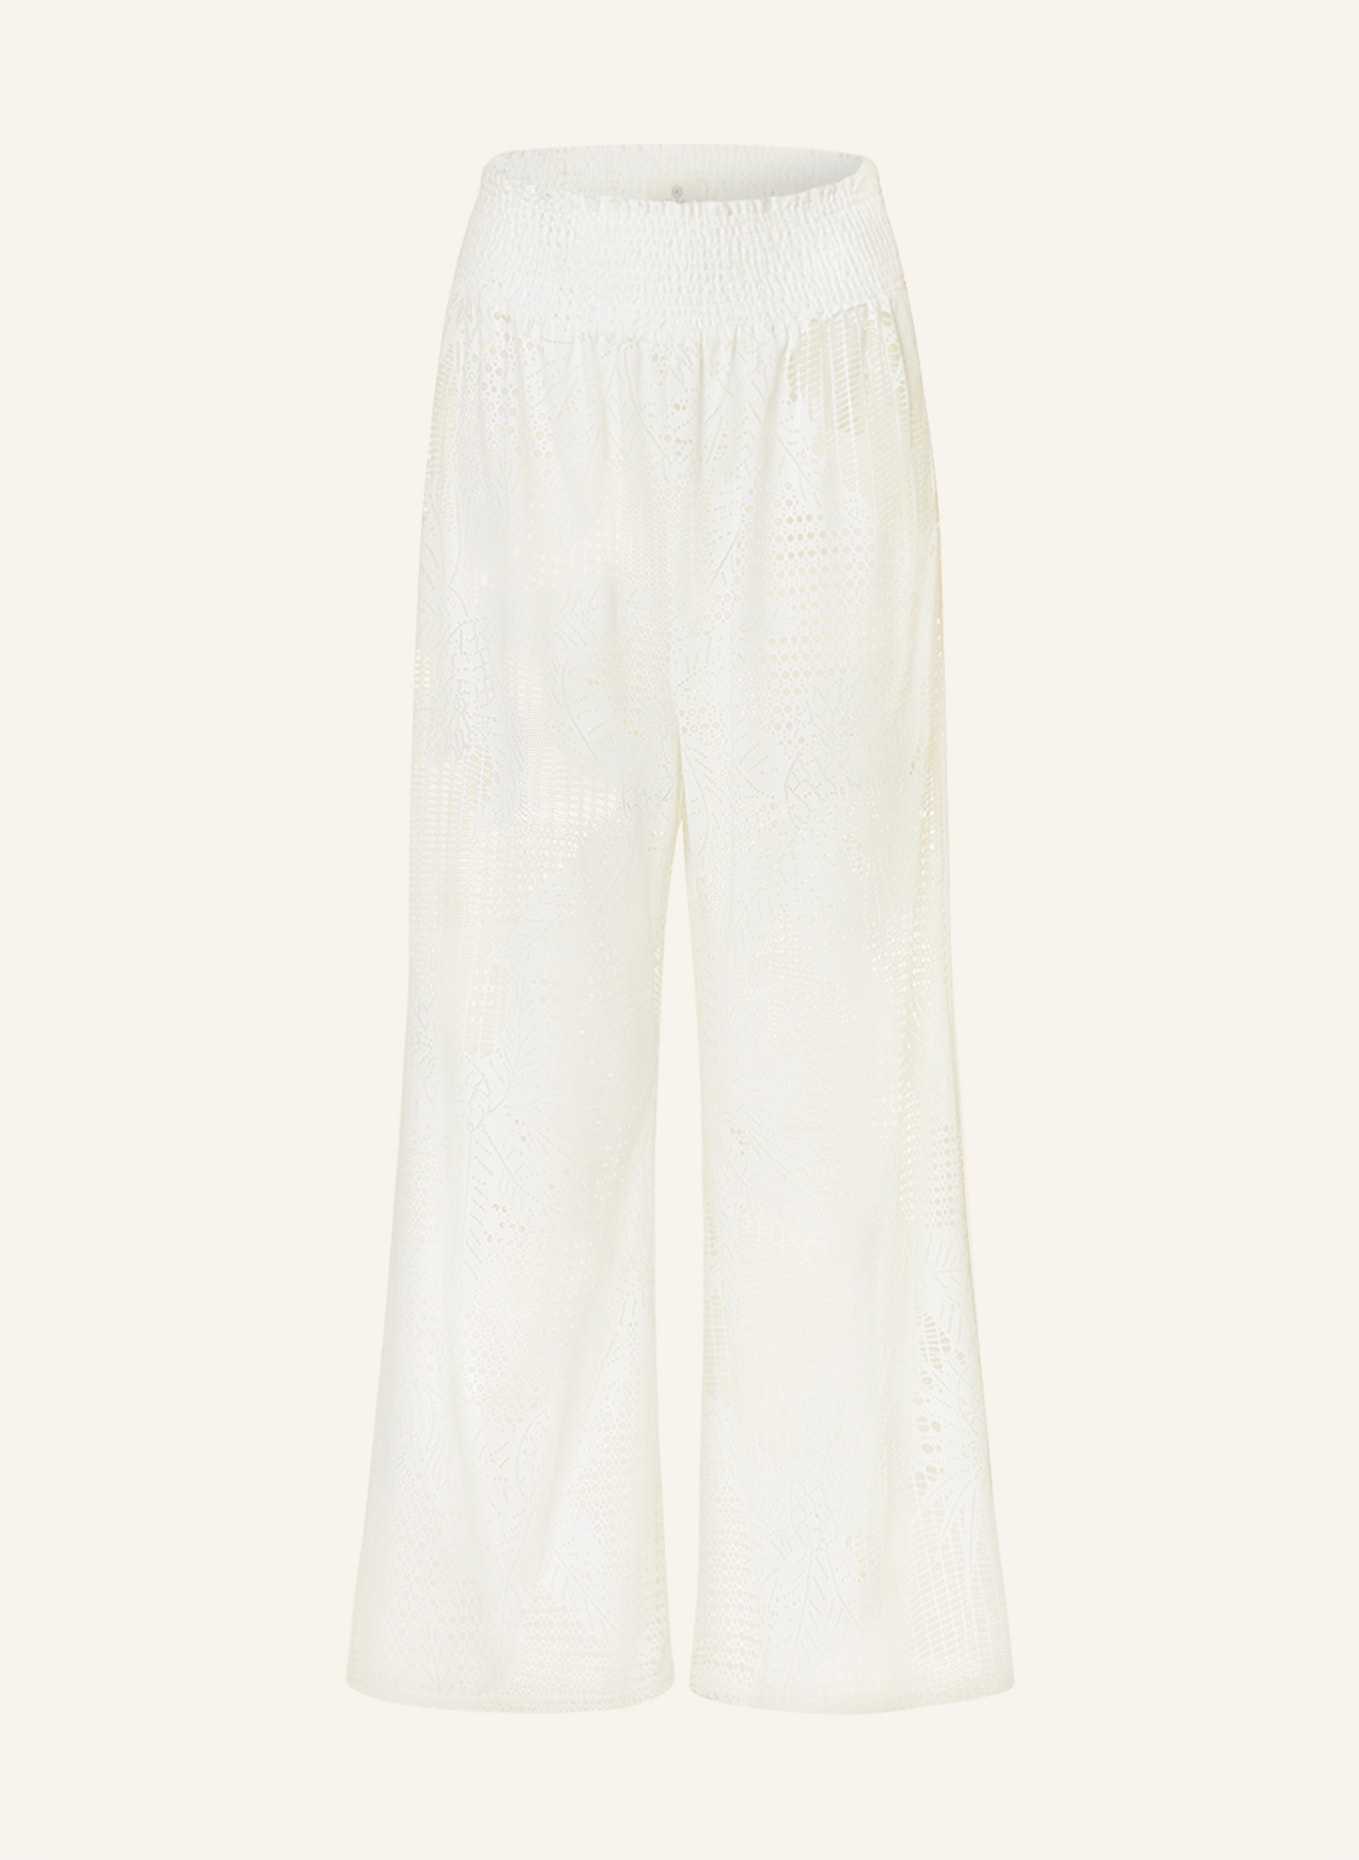 watercult 7/8 pants NAUTIC CALL, Color: ECRU (Image 1)